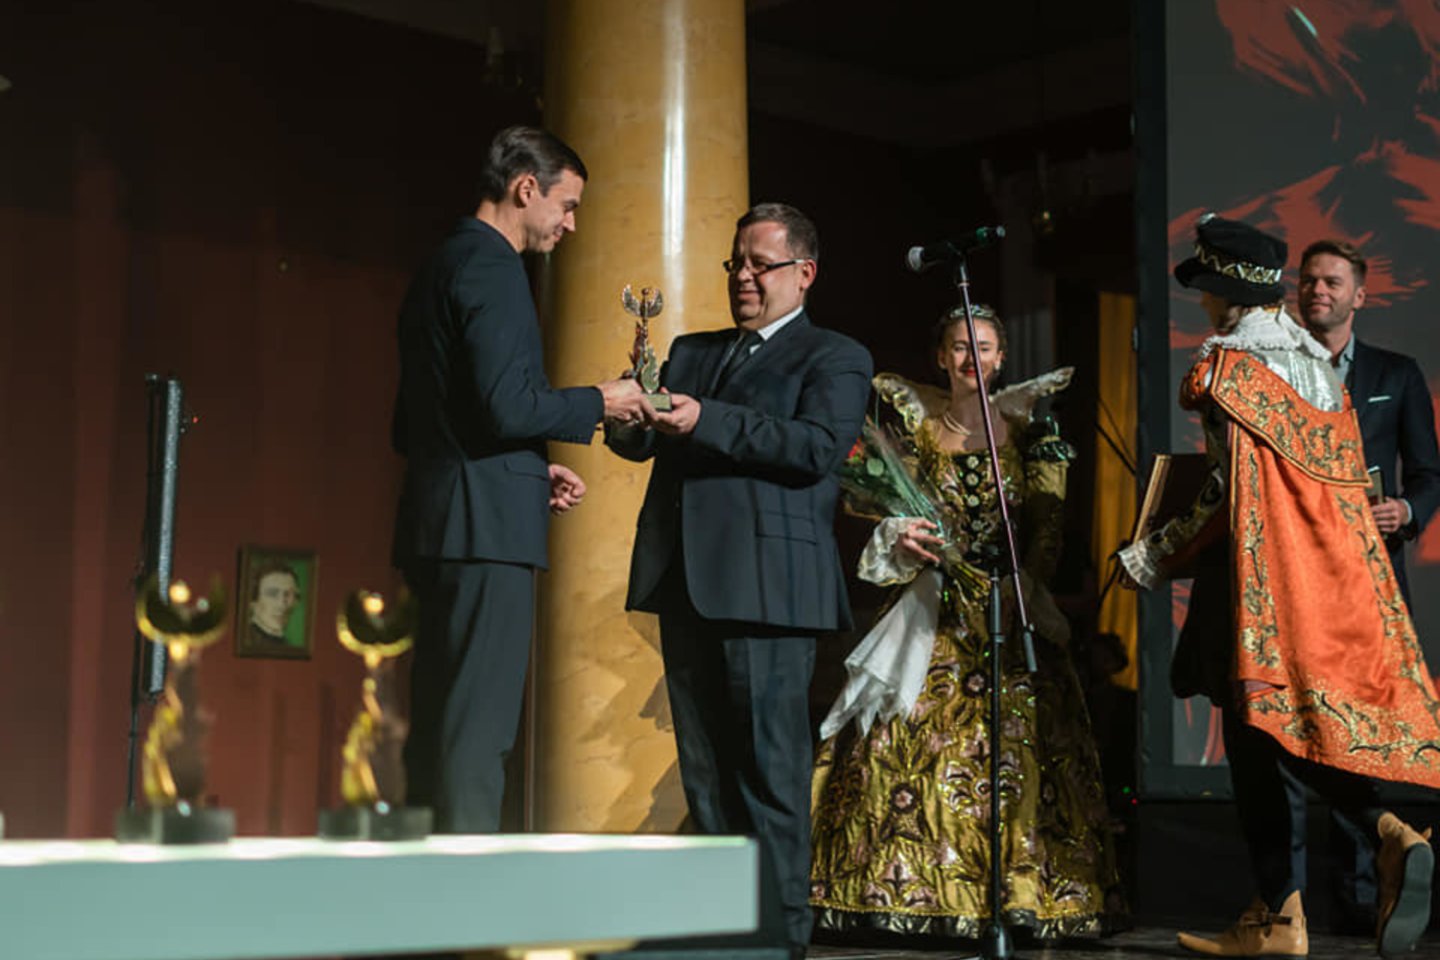 „Geriausio metų kultūros kūrėjo“ „Auksinis feniksas“ įteiktas Kybartų kultūros centro pučiamųjų orkestro „Kybartai“ vadovui D.Ziegoraičiui. Apdovanojimą įteikė Lietuvos kultūros centrų asociacijos prezidentas R.Matulis.